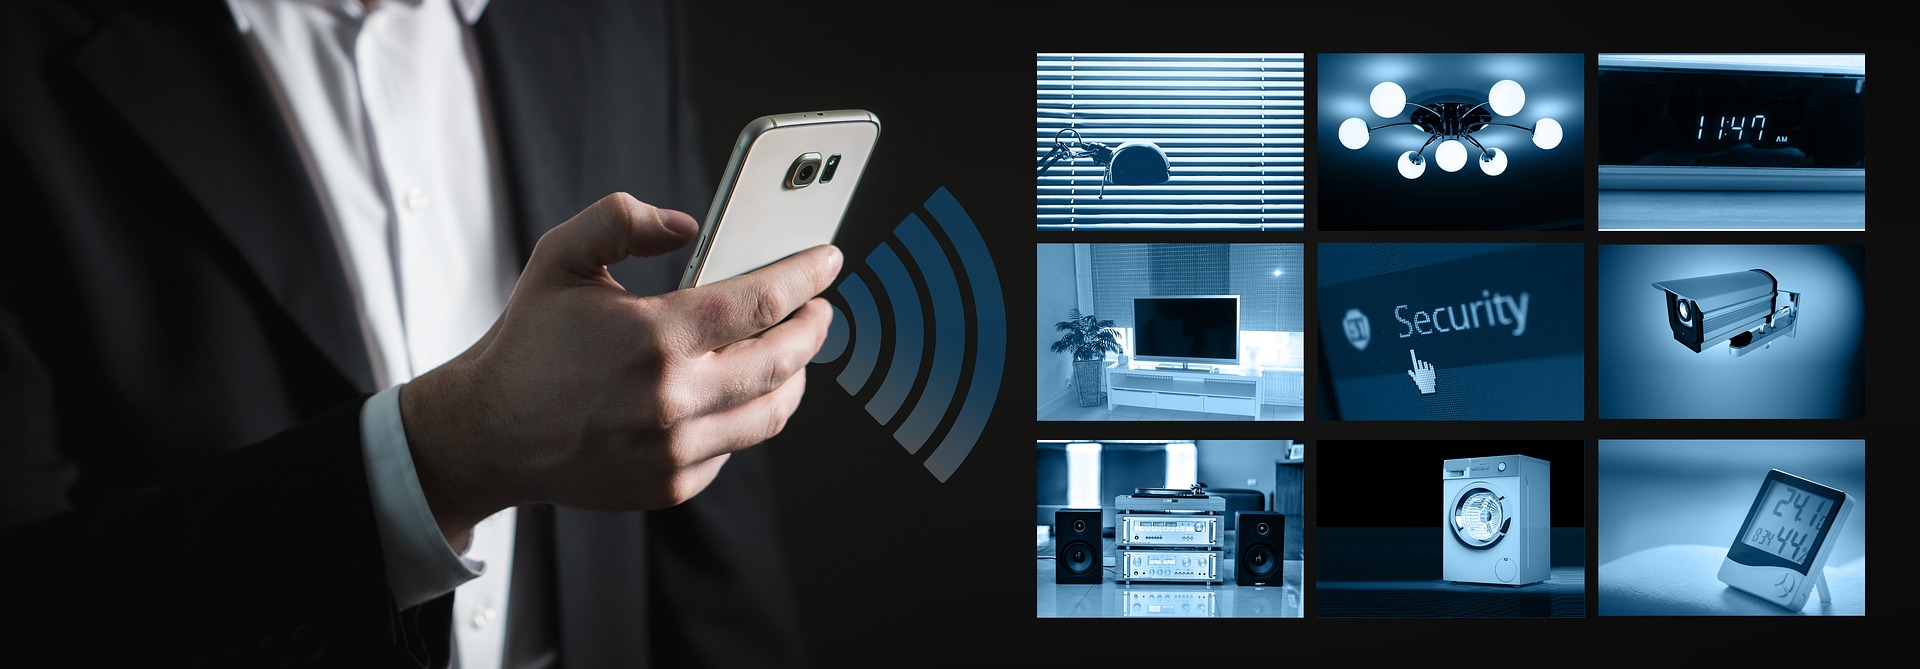 La compañía Go! Seguridad ofrece alarmas para casa de última tecnología para  evitar robos y okupas